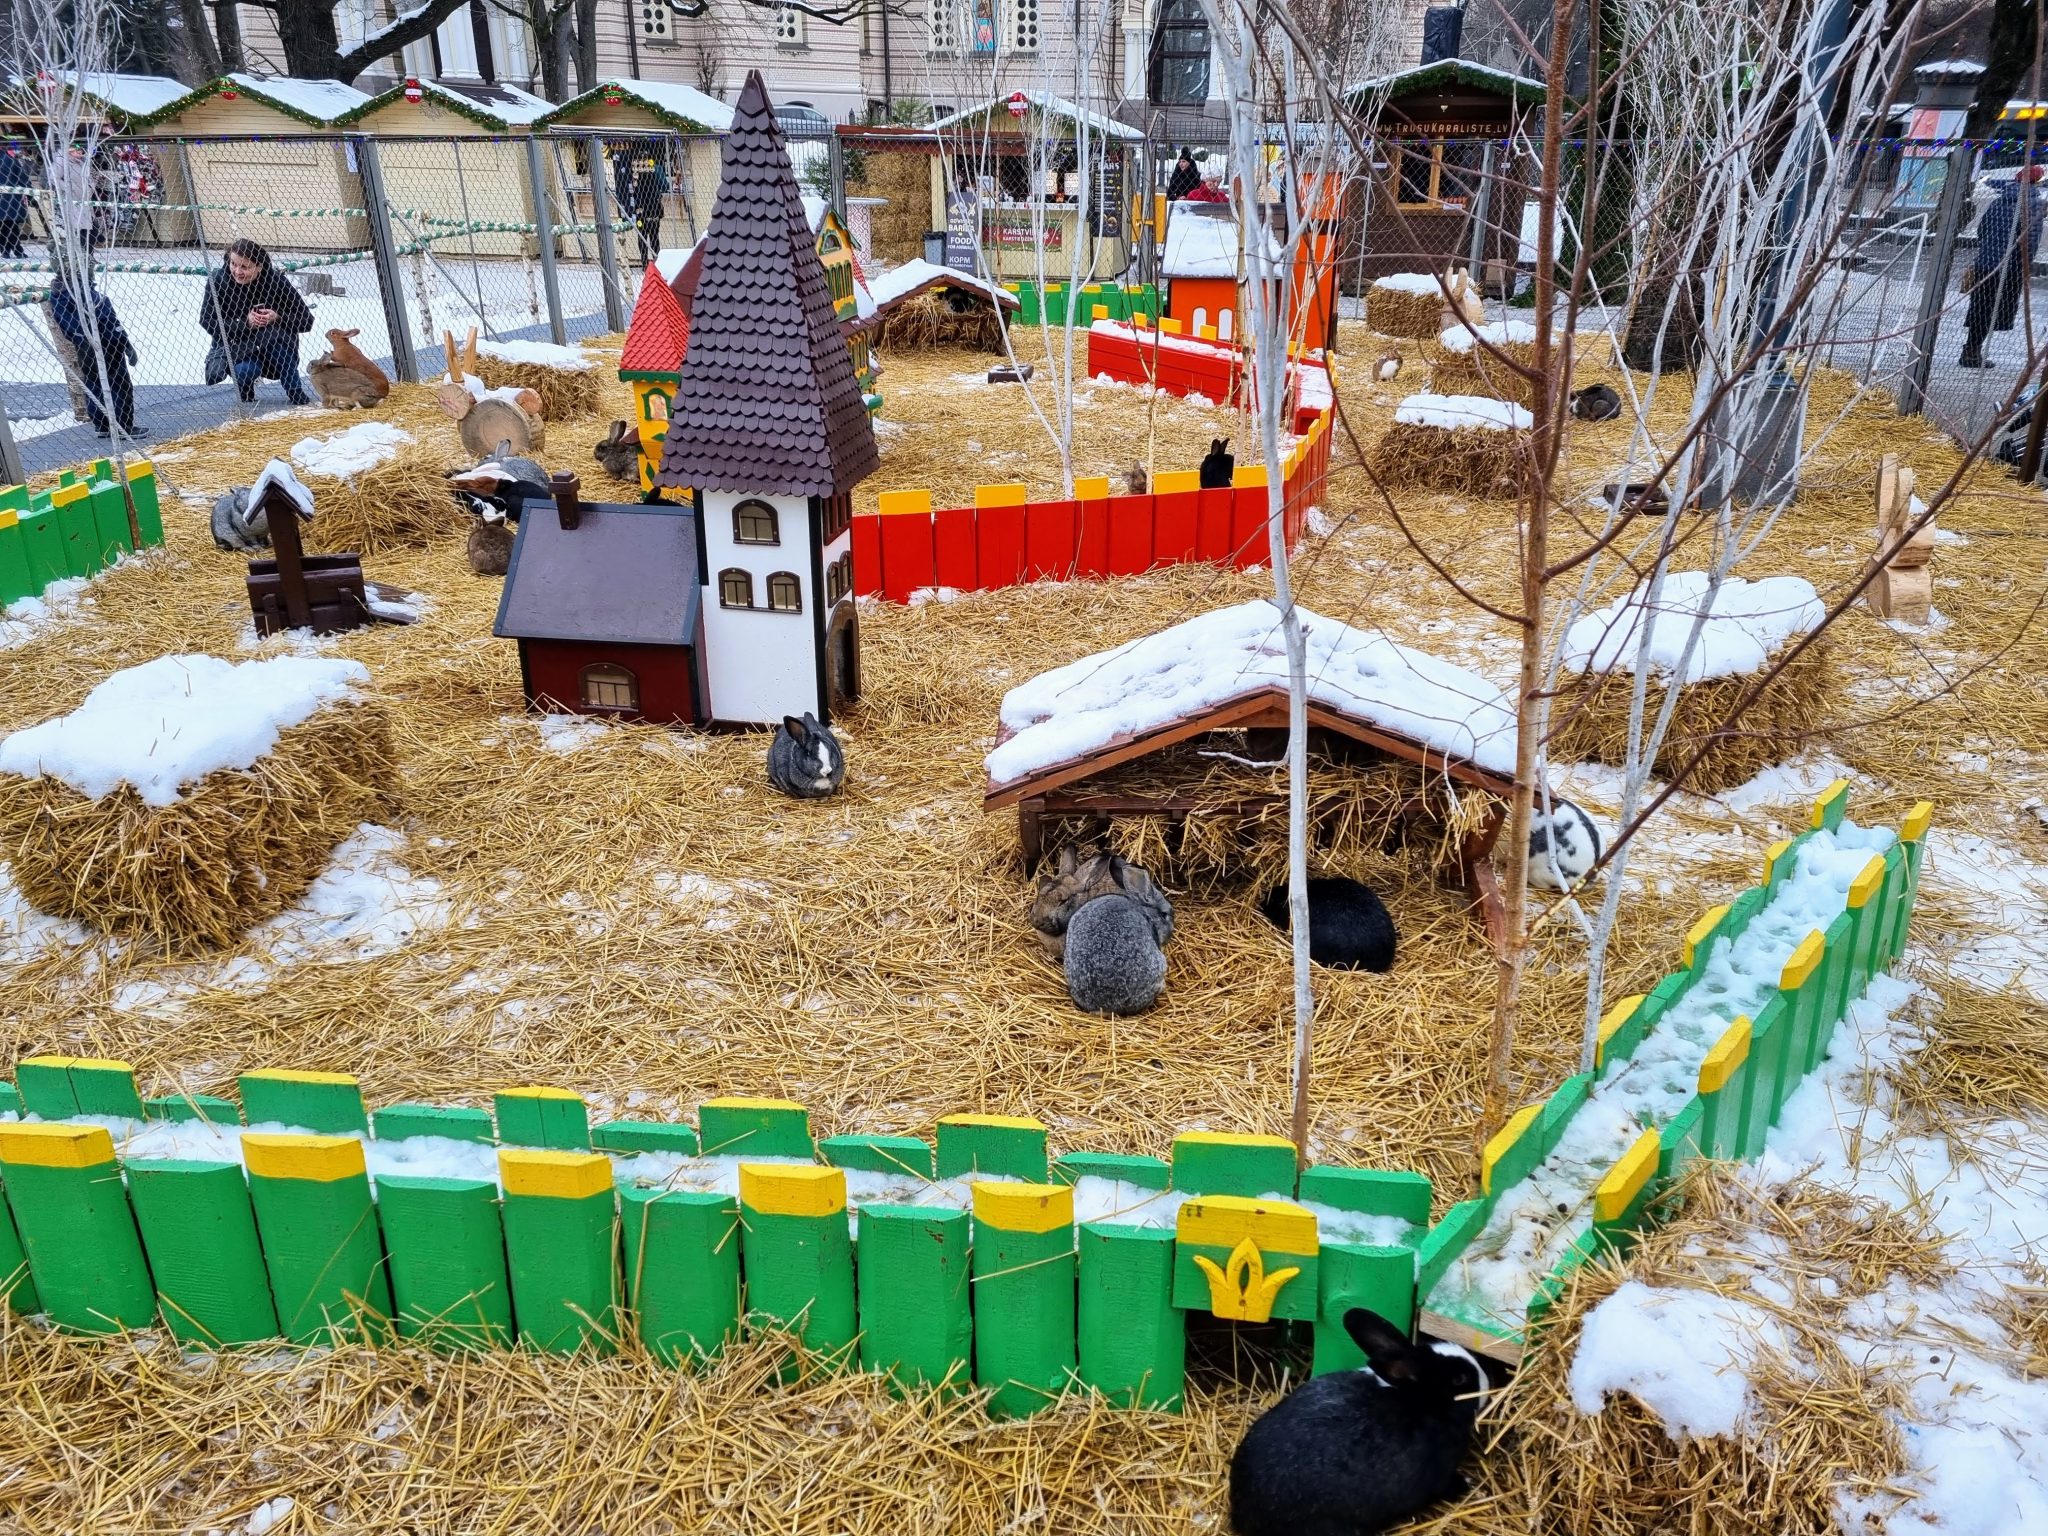 Riga Christmas market at Esplanade park